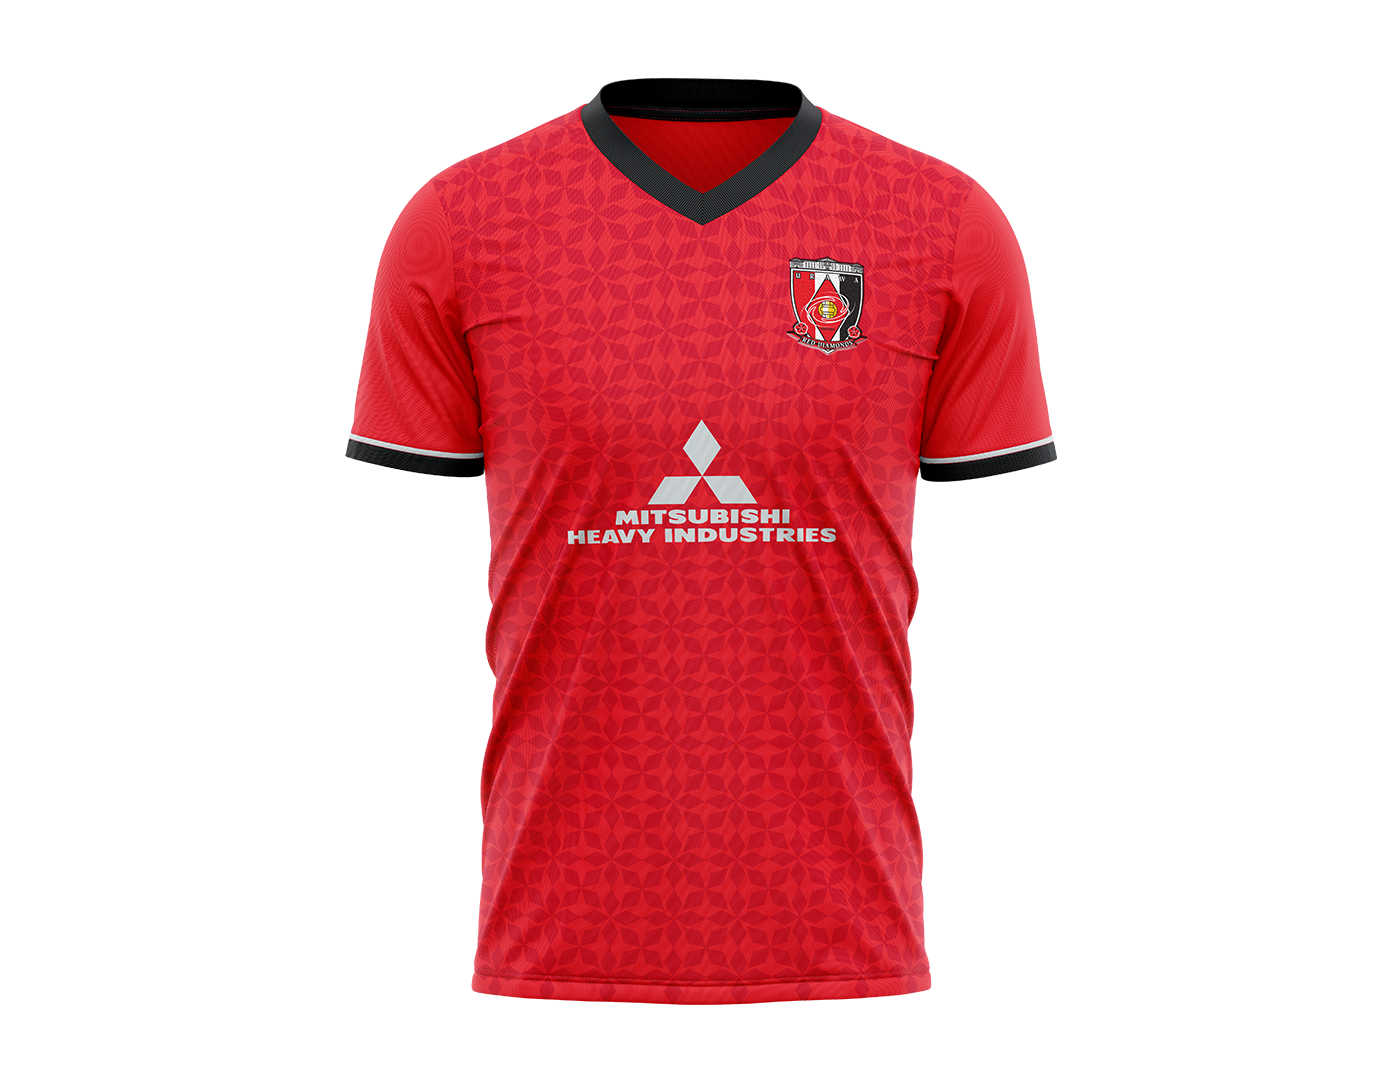 concept fantasy kit football Futbol japan jersey jleague soocer Football kit Soccer Kit